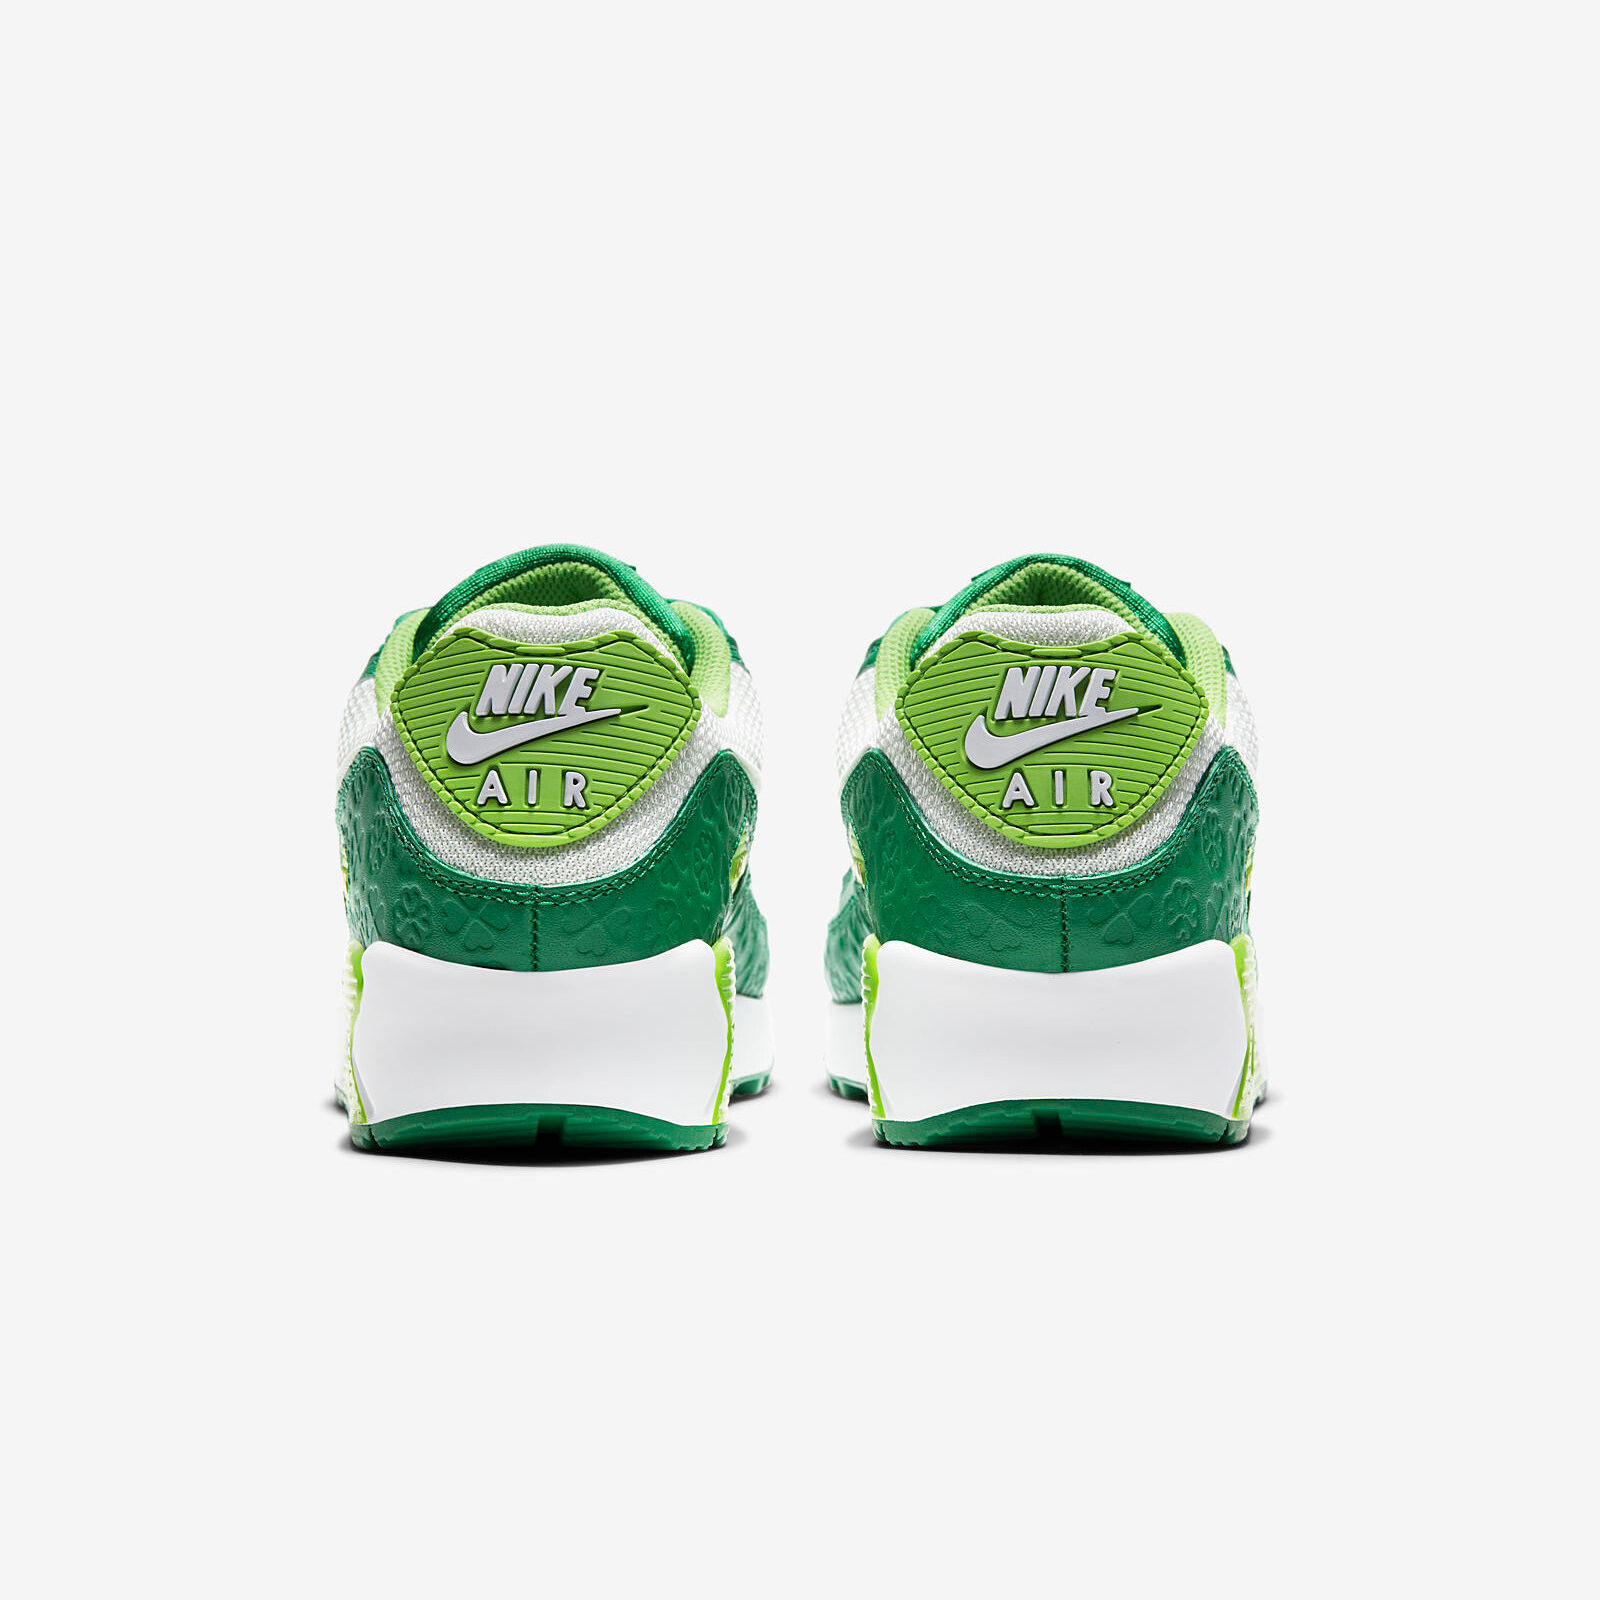 Nike Air Max 90
St. Patricks Day